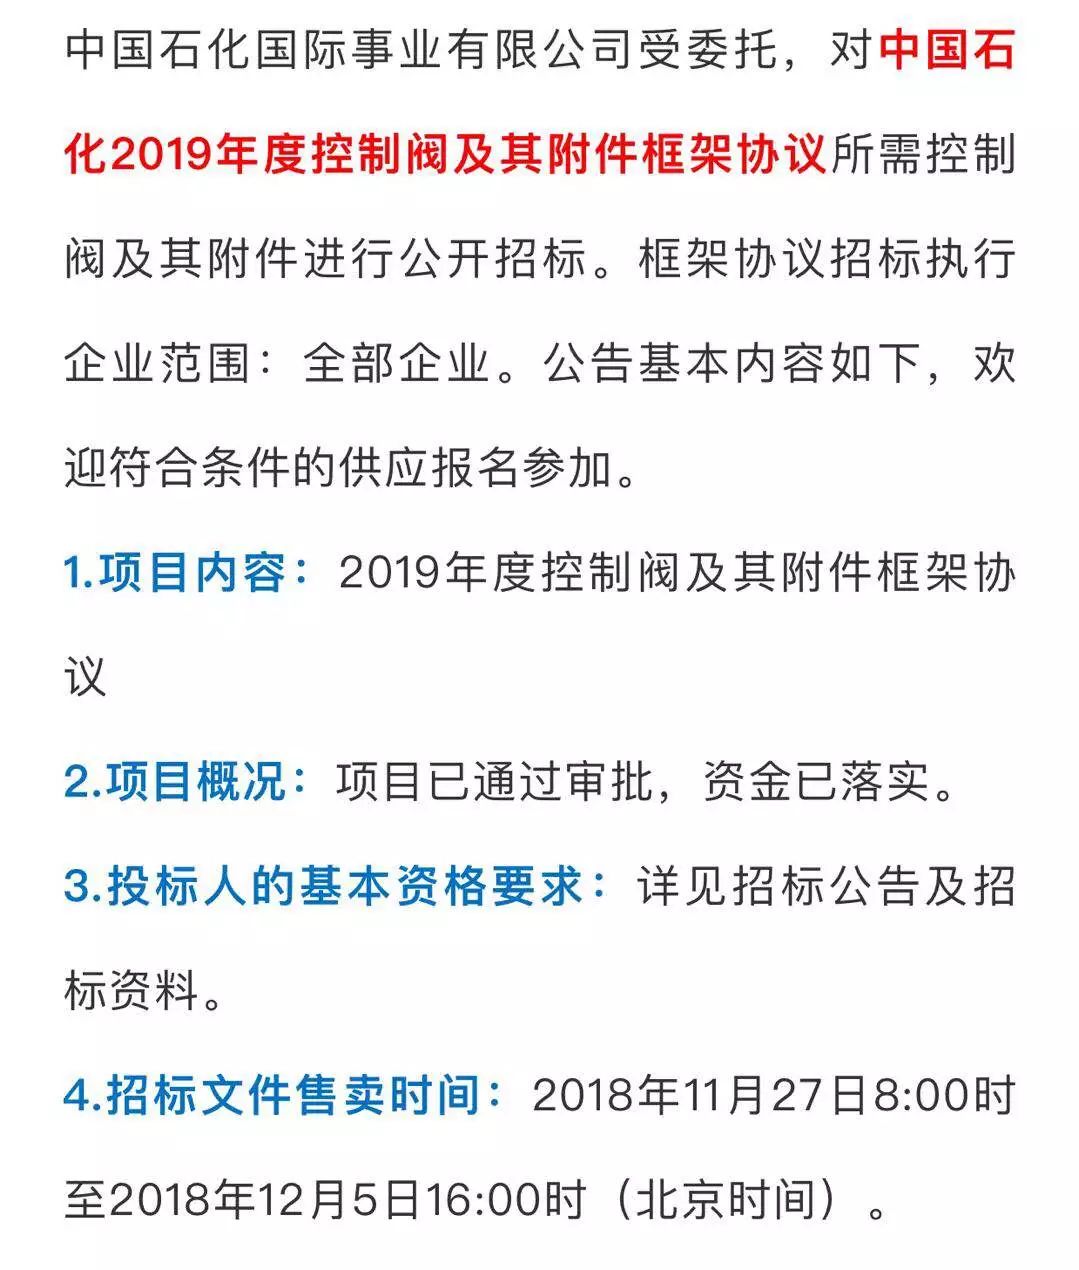 中国石化2019年度控制阀及其附件框架